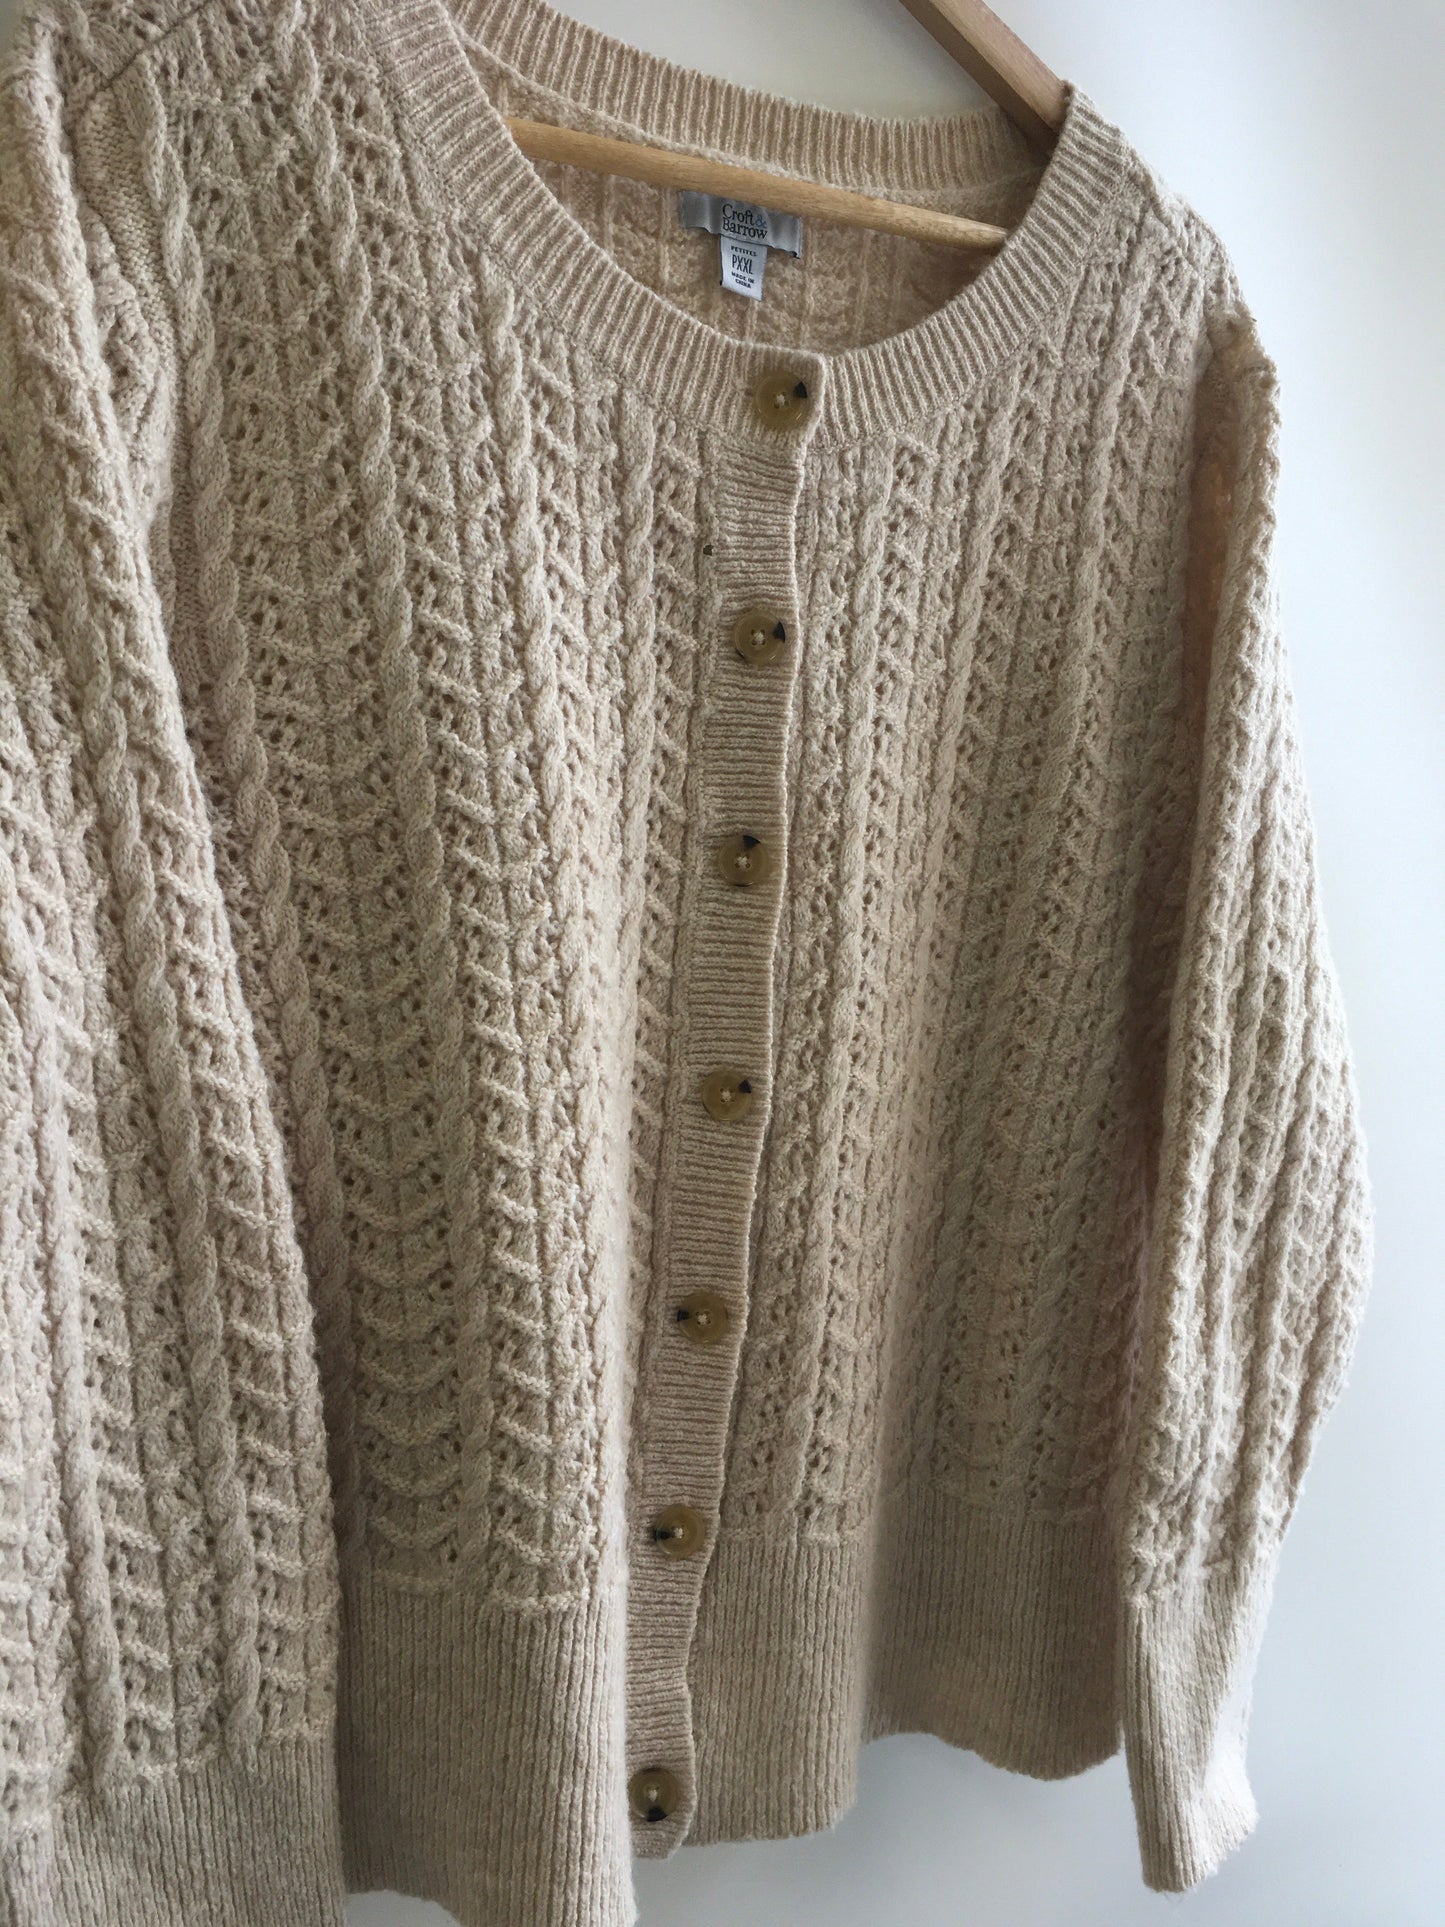 Sweater Cardigan By Croft And Barrow  Size: Xxl